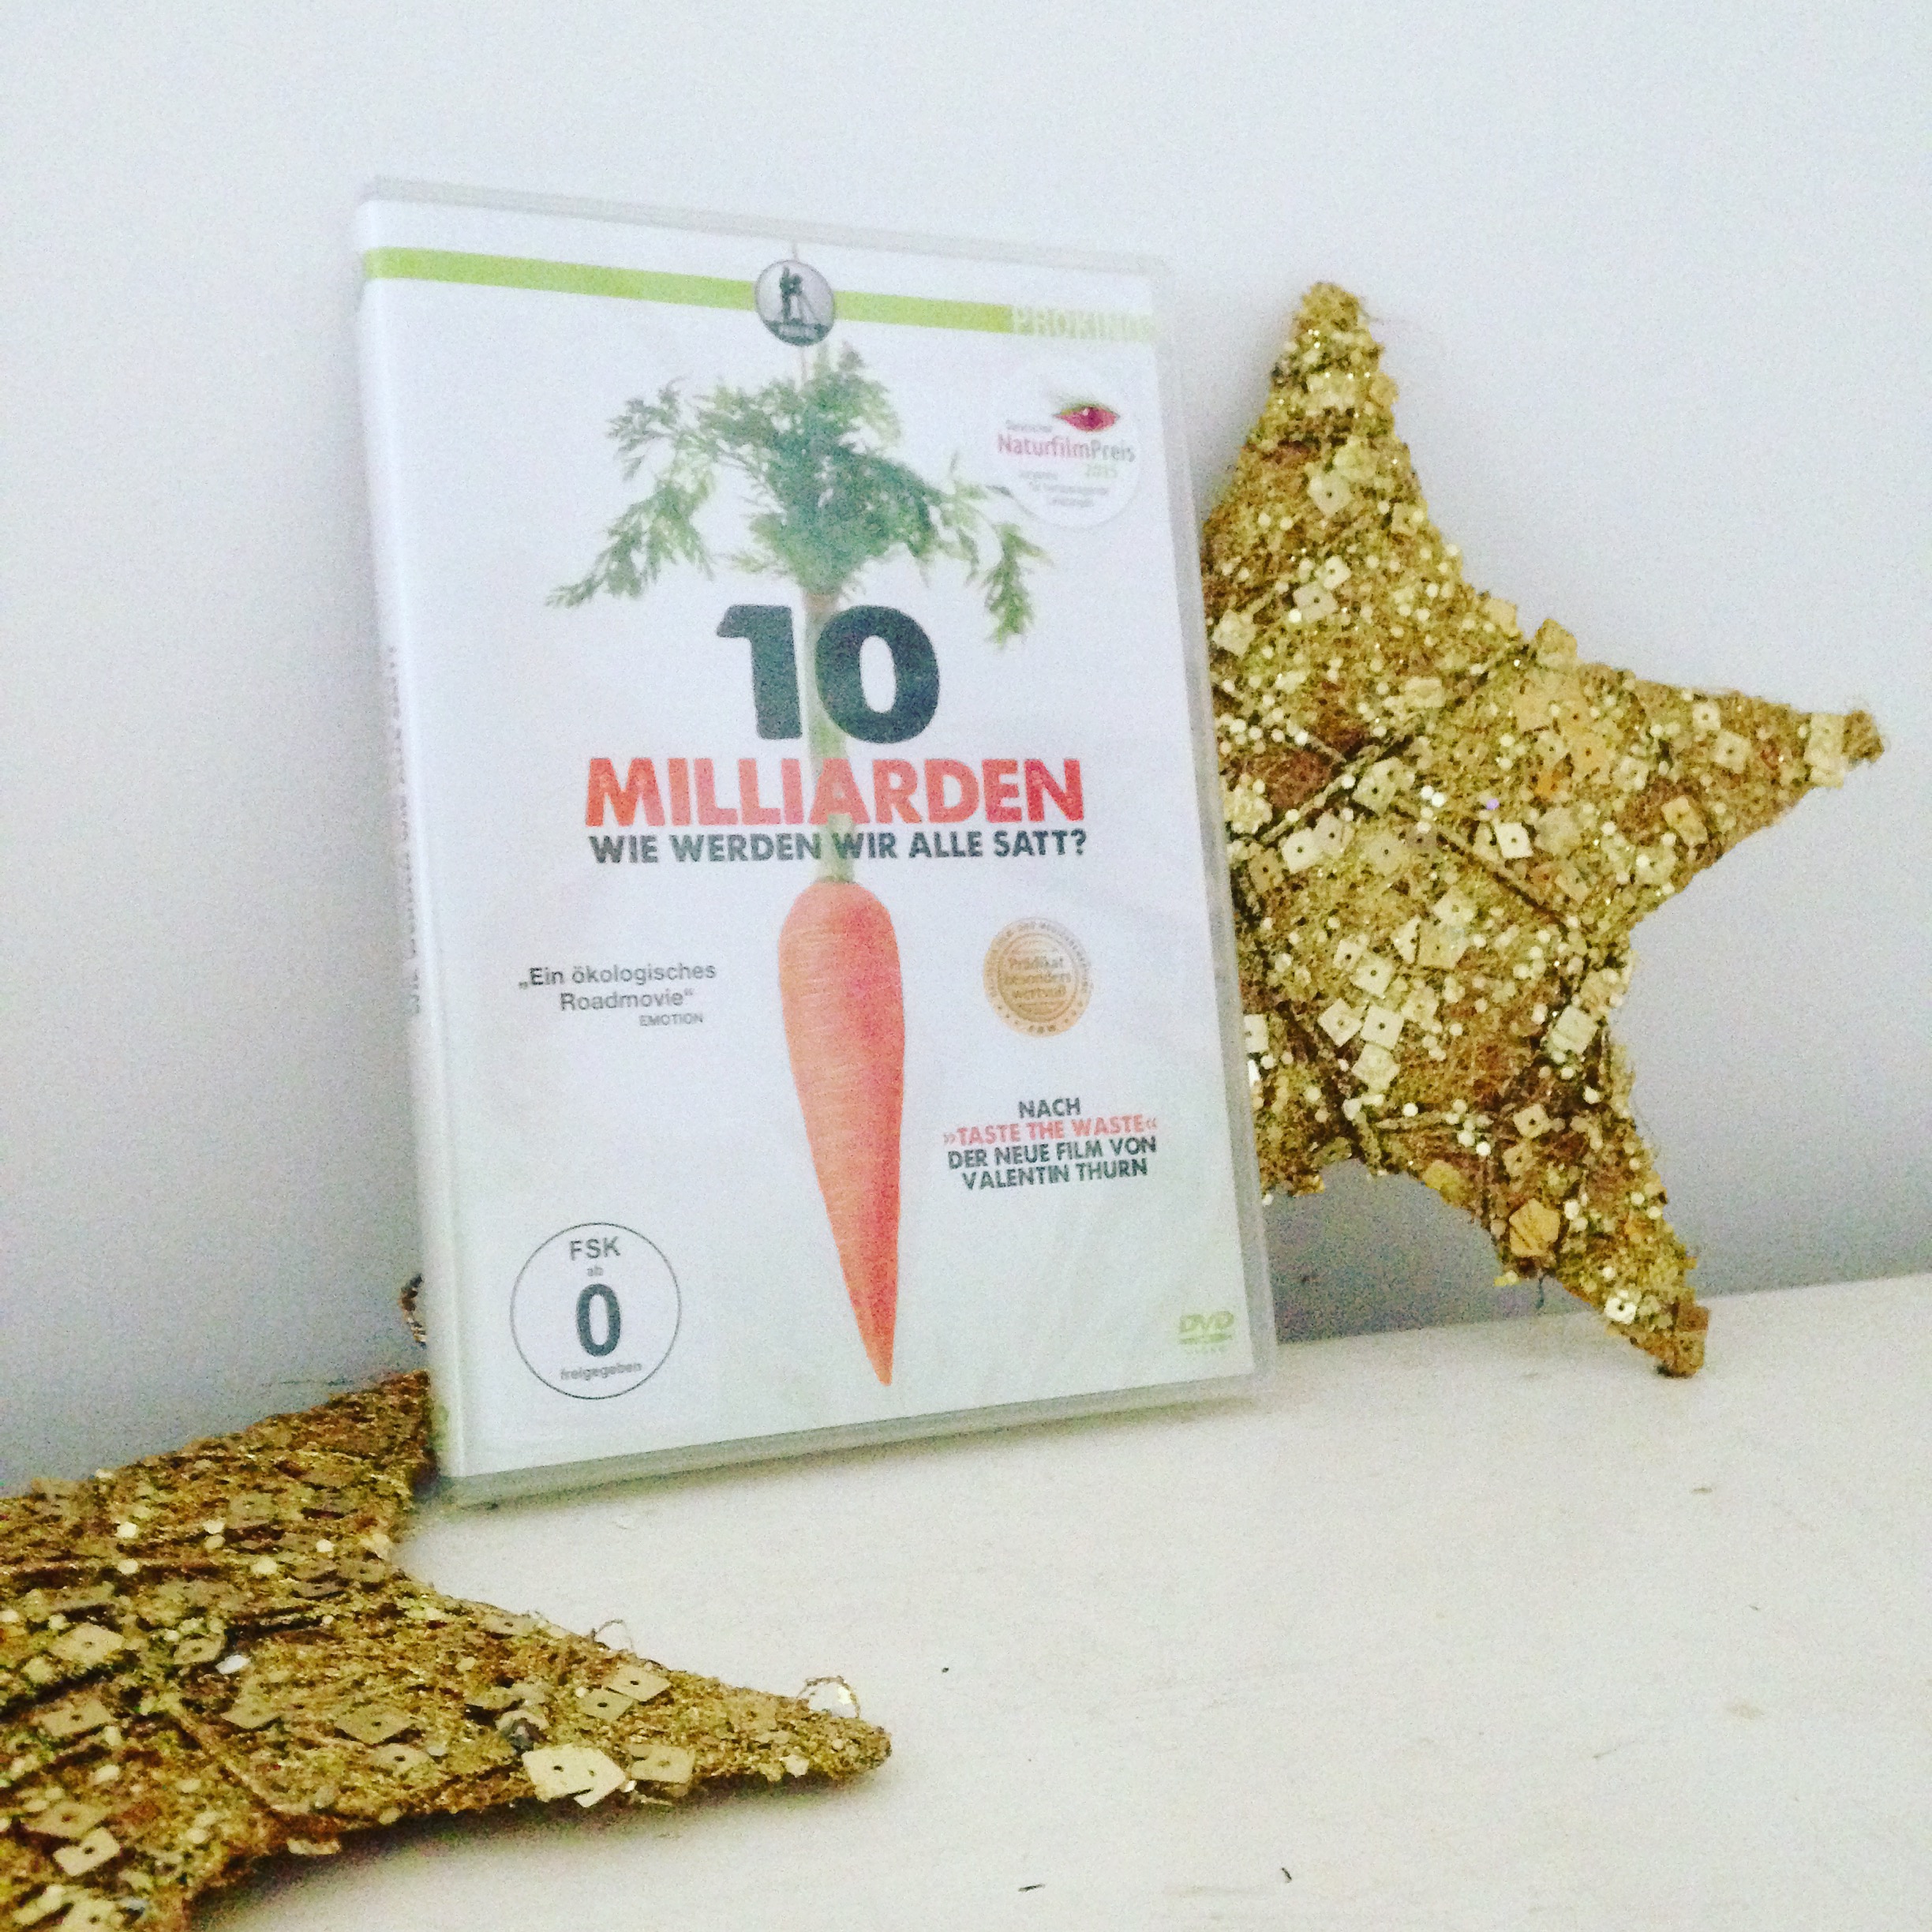 2. Dezember 2015: Gewinnspiel DVD “10 Milliarden – wie werden wir alle satt?”